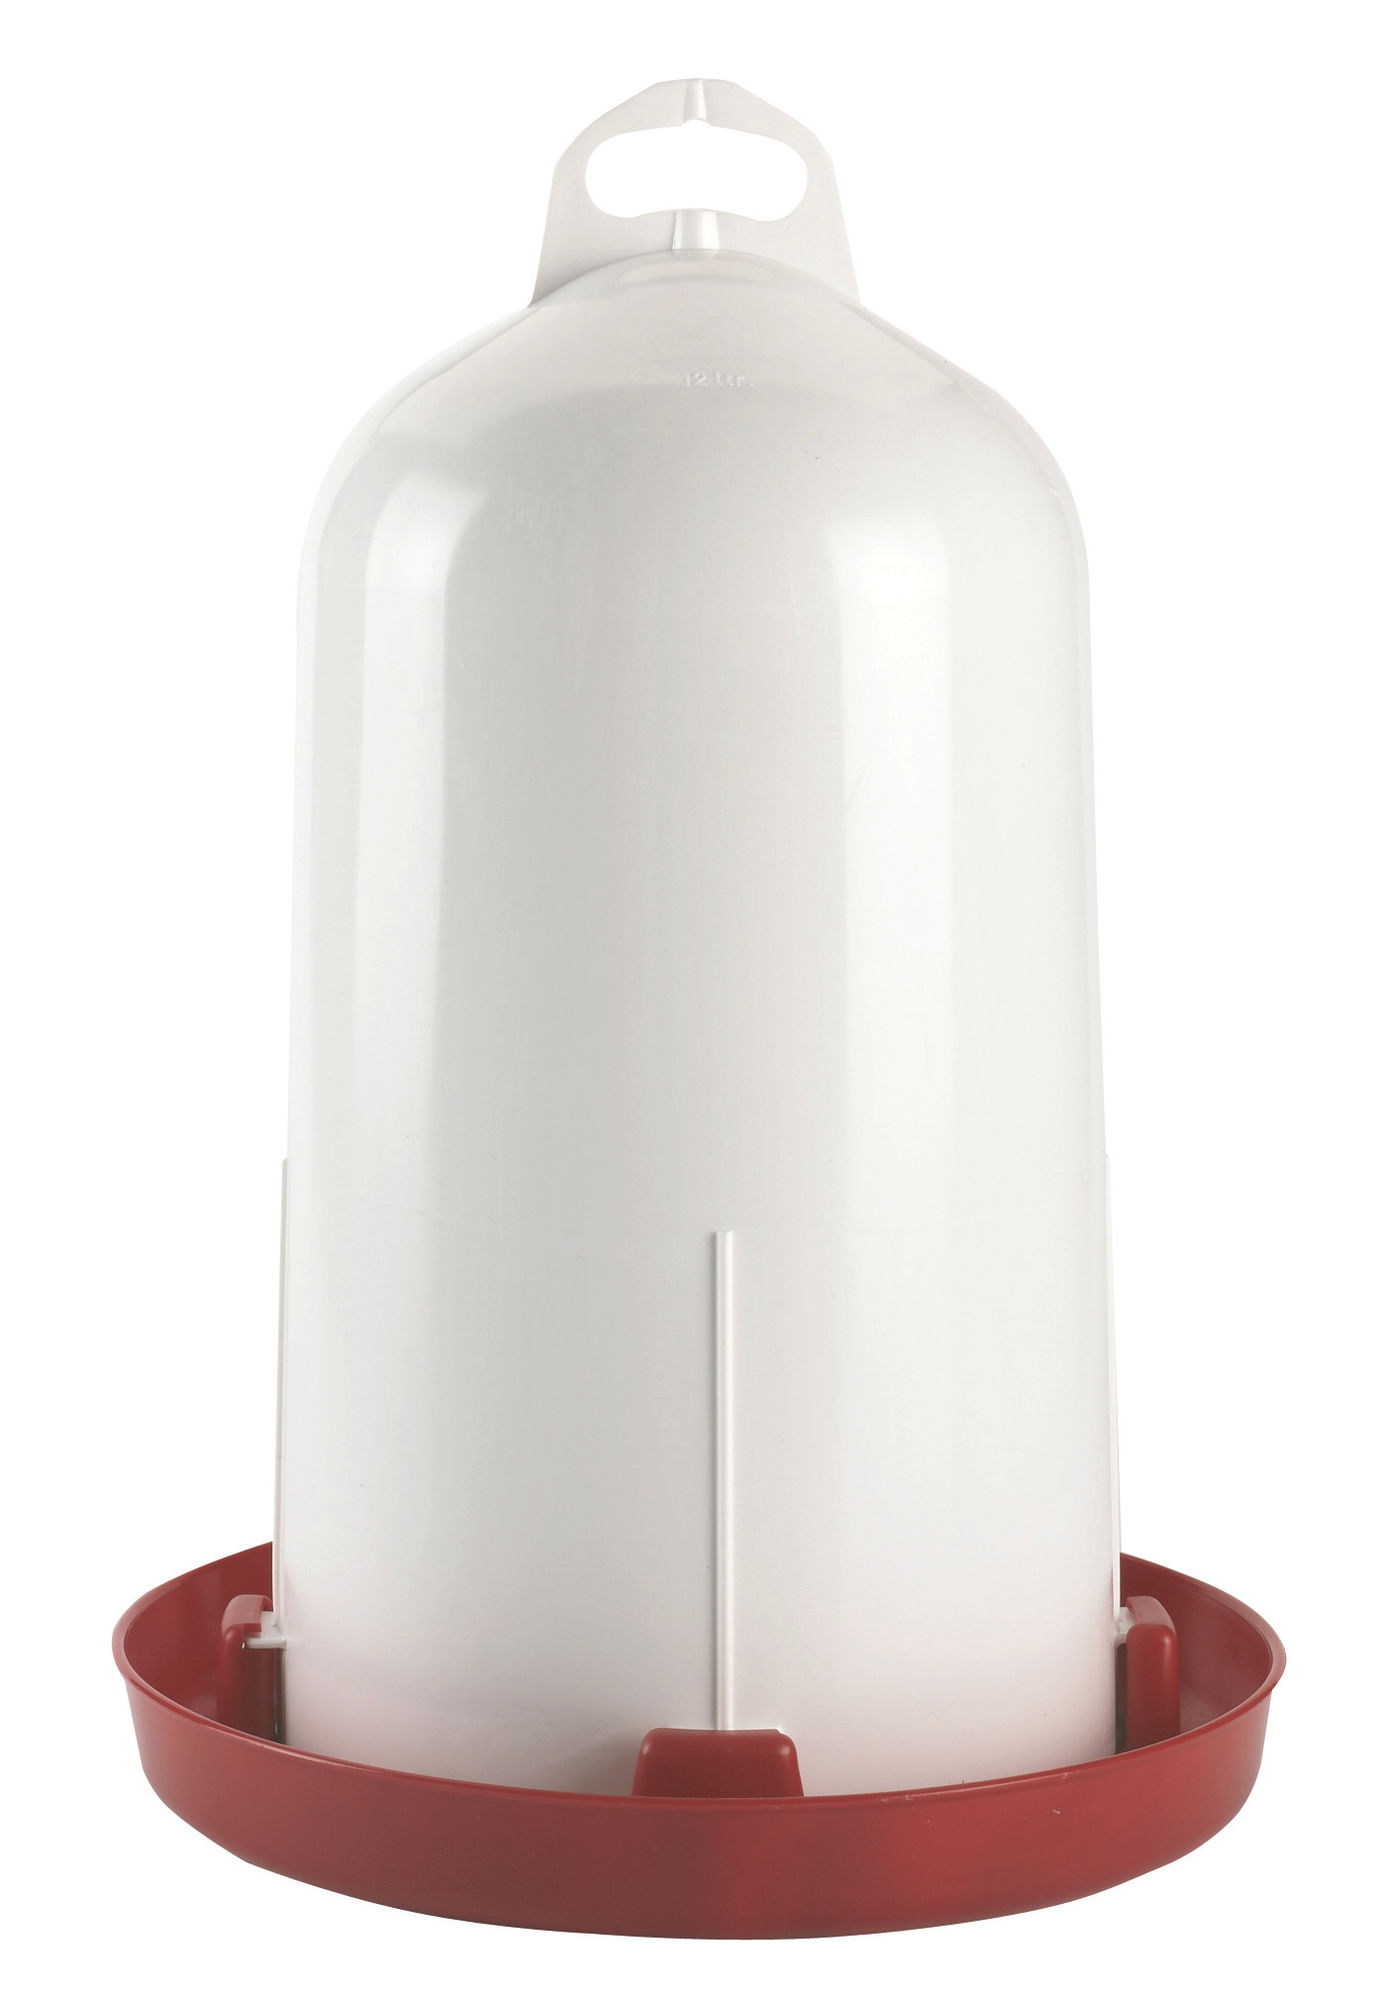 Doppelzylinder-Tränke 12 ltr., Geflügel, Kunststoff weiß/rot